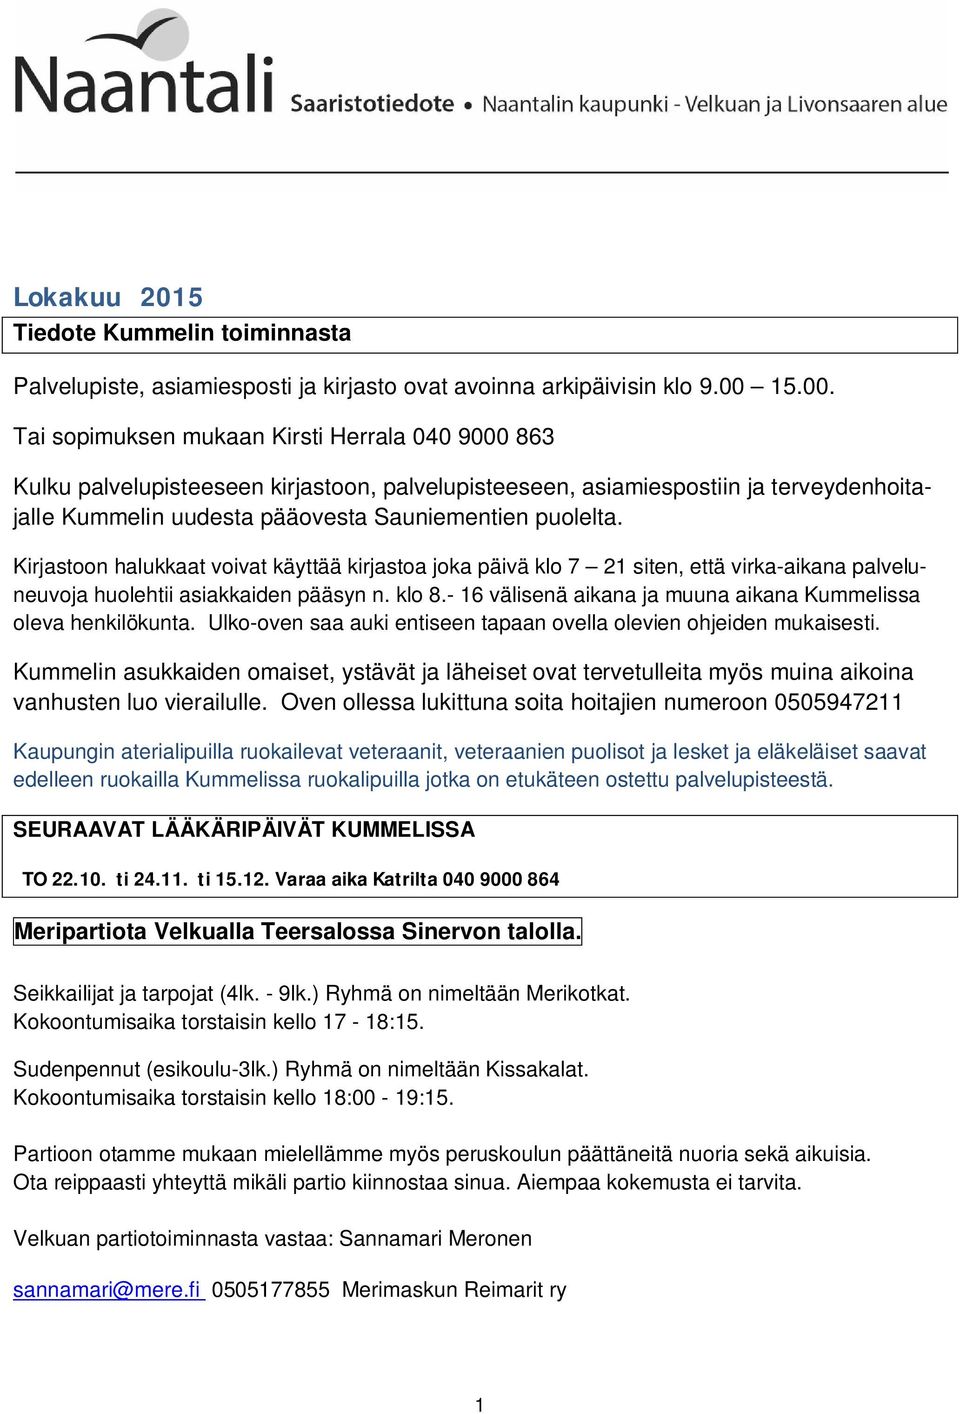 Tai sopimuksen mukaan Kirsti Herrala 040 9000 863 Kulku palvelupisteeseen kirjastoon, palvelupisteeseen, asiamiespostiin ja terveydenhoitajalle Kummelin uudesta pääovesta Sauniementien puolelta.